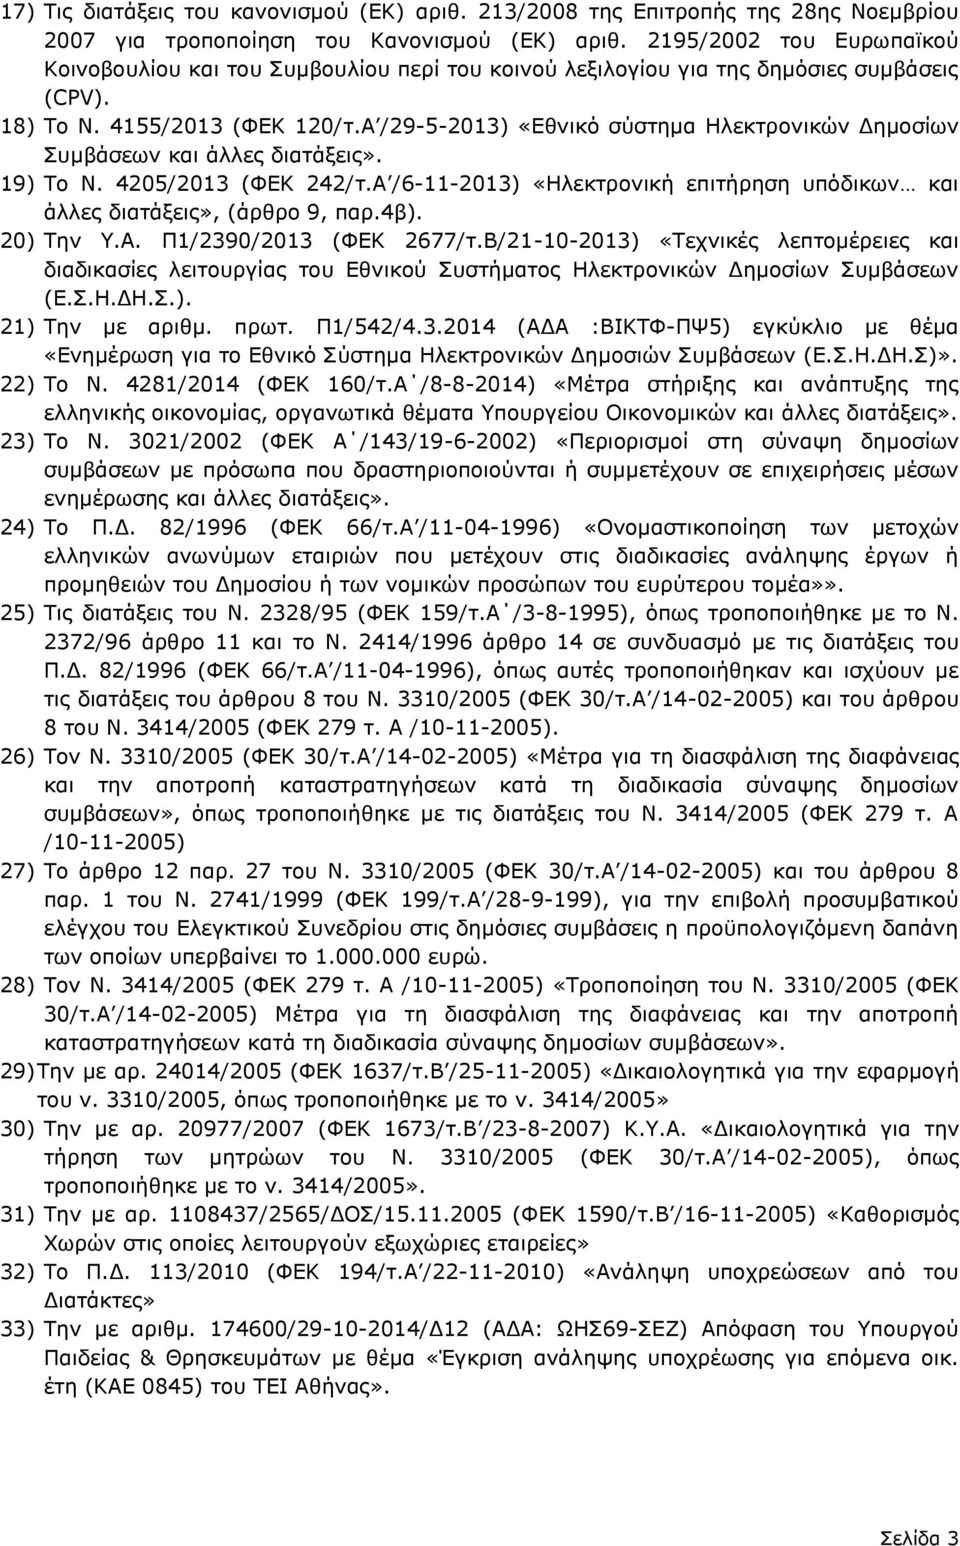 Α /29-5-2013) «Εθνικό σύστημα Ηλεκτρονικών Δημοσίων Συμβάσεων και άλλες διατάξεις». 19) Το Ν. 4205/2013 (ΦΕΚ 242/τ.Α /6-11-2013) «Ηλεκτρονική επιτήρηση υπόδικων και άλλες διατάξεις», (άρθρο 9, παρ.